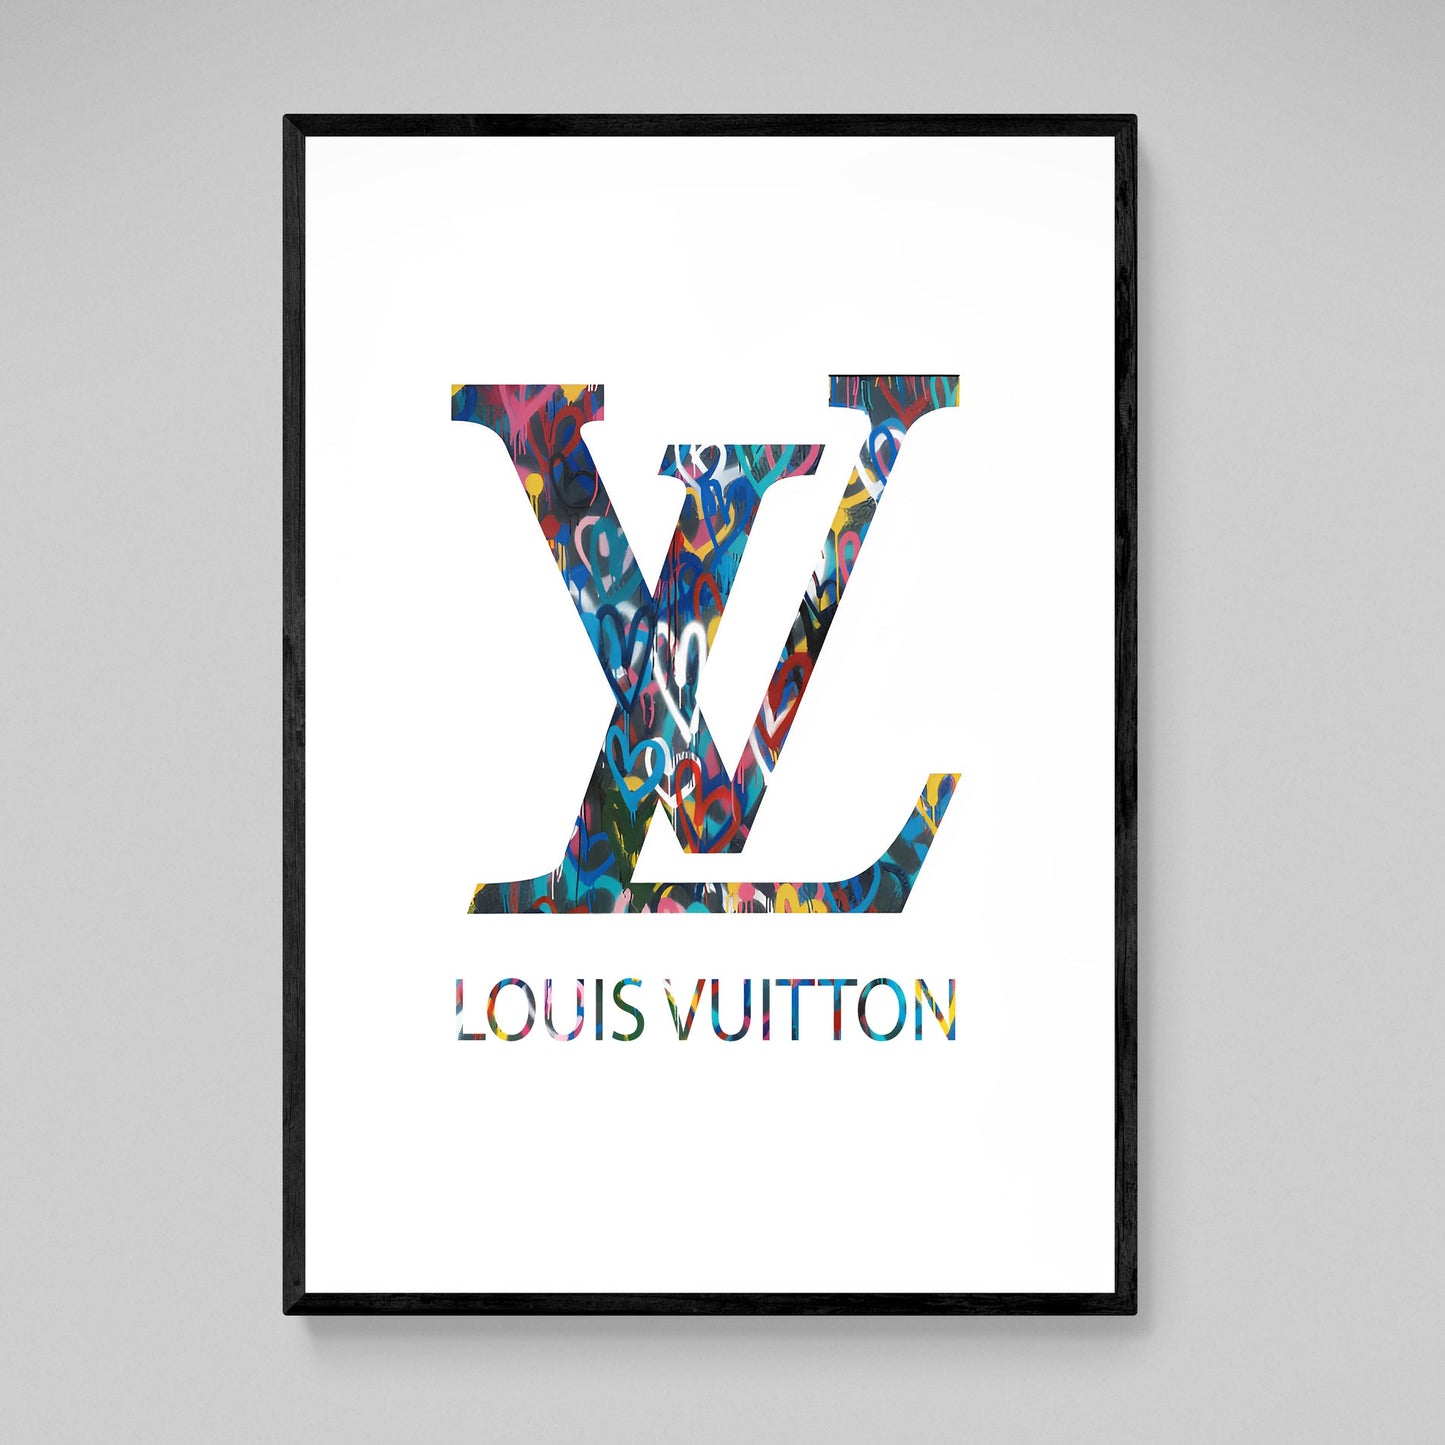 Louis Vuitton Posters Prints Wall Art